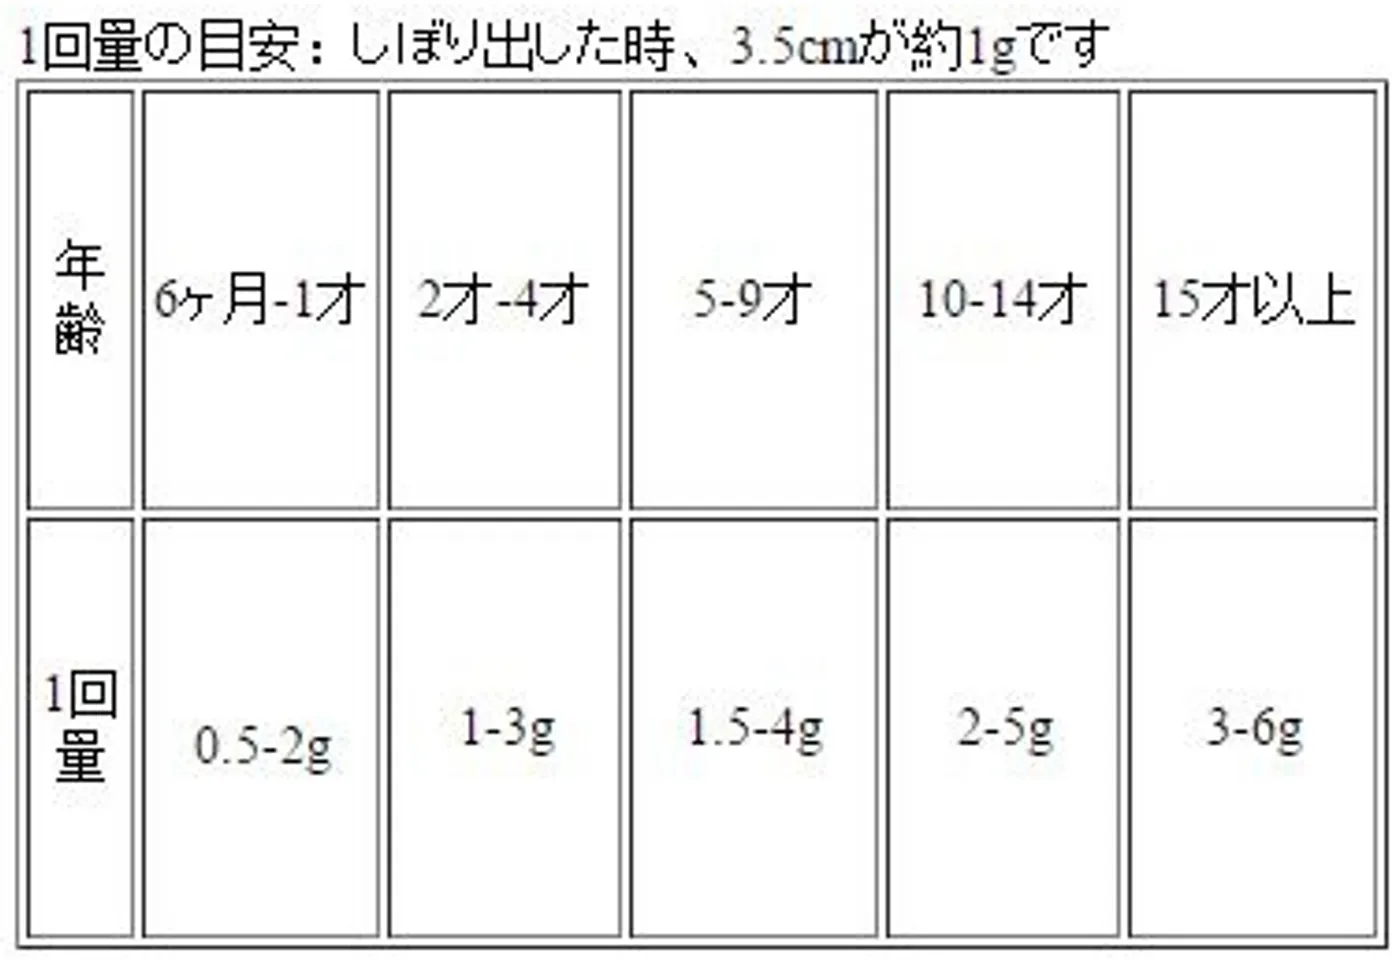 Bảng chỉ dẫn cách sử dụng dầu bôi ấm ngực trị ho, sổ mũi Pigeon bằng tiếng Nhật